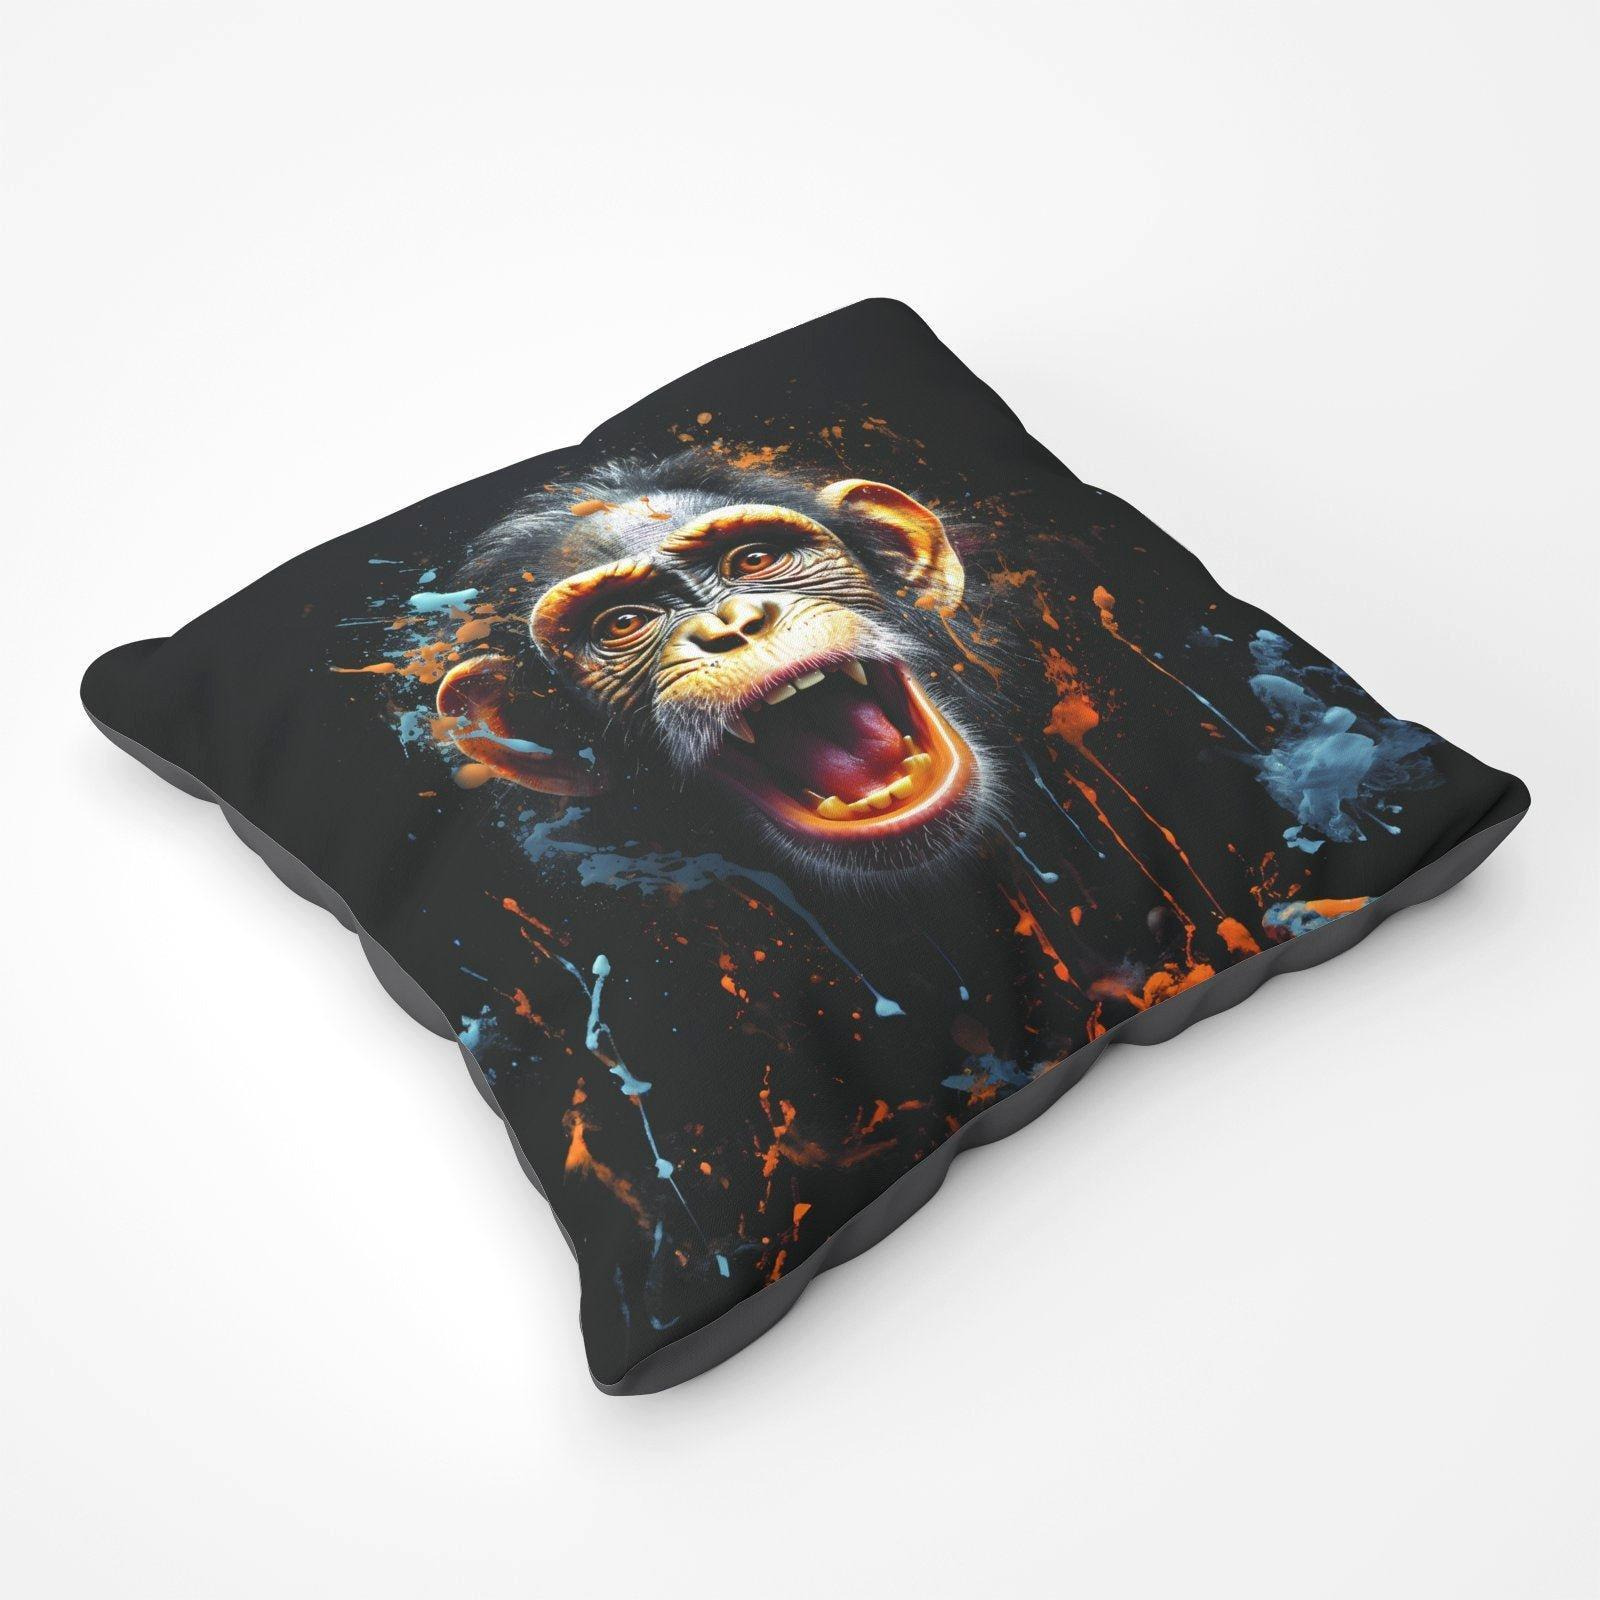 Monkey Face Splashart Floor Cushion - image 1